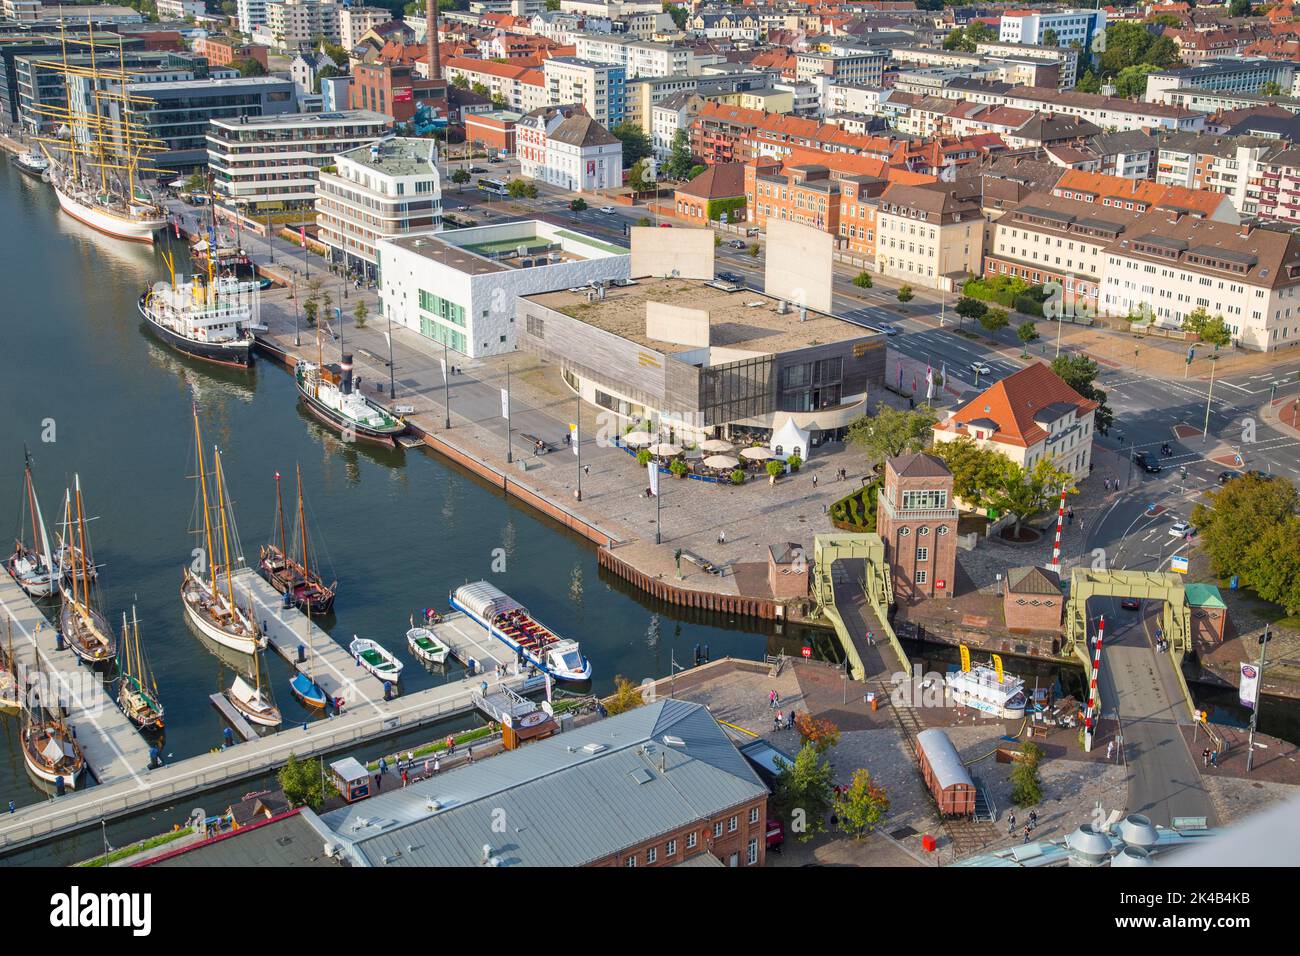 Wie eine Modelleisenbahn: Blick auf den neuen Hafen von der 86 Meter hohen  Aussichtsplattform des Atlantic Hotel Sail City, Havenwelten, Bremerhaven  Stockfotografie - Alamy